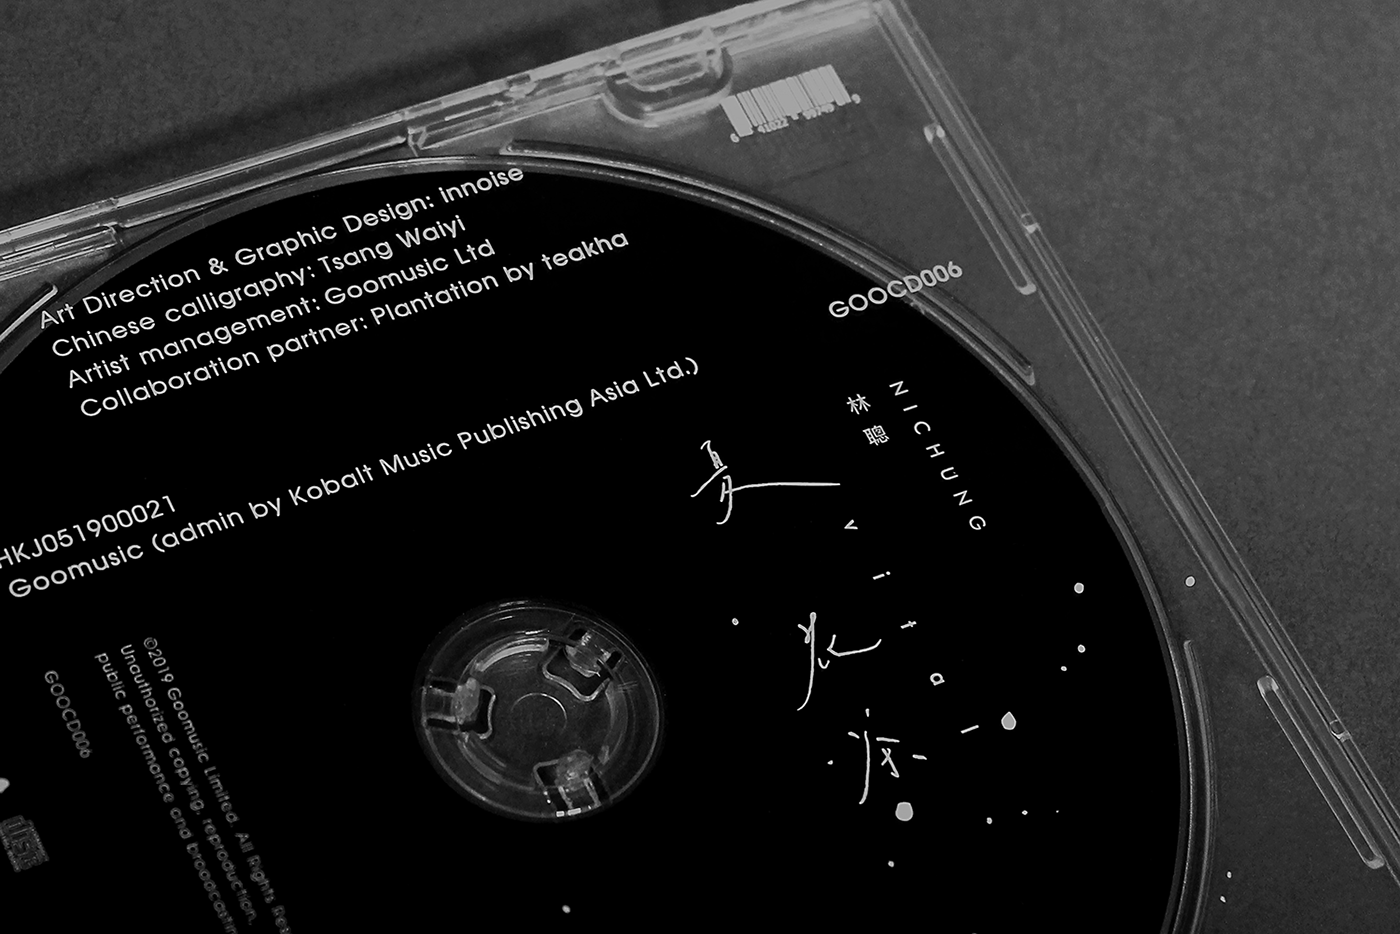 innoise jerry luk Hong Kong Vital CD design cd packing Logo Design identity digita art ink